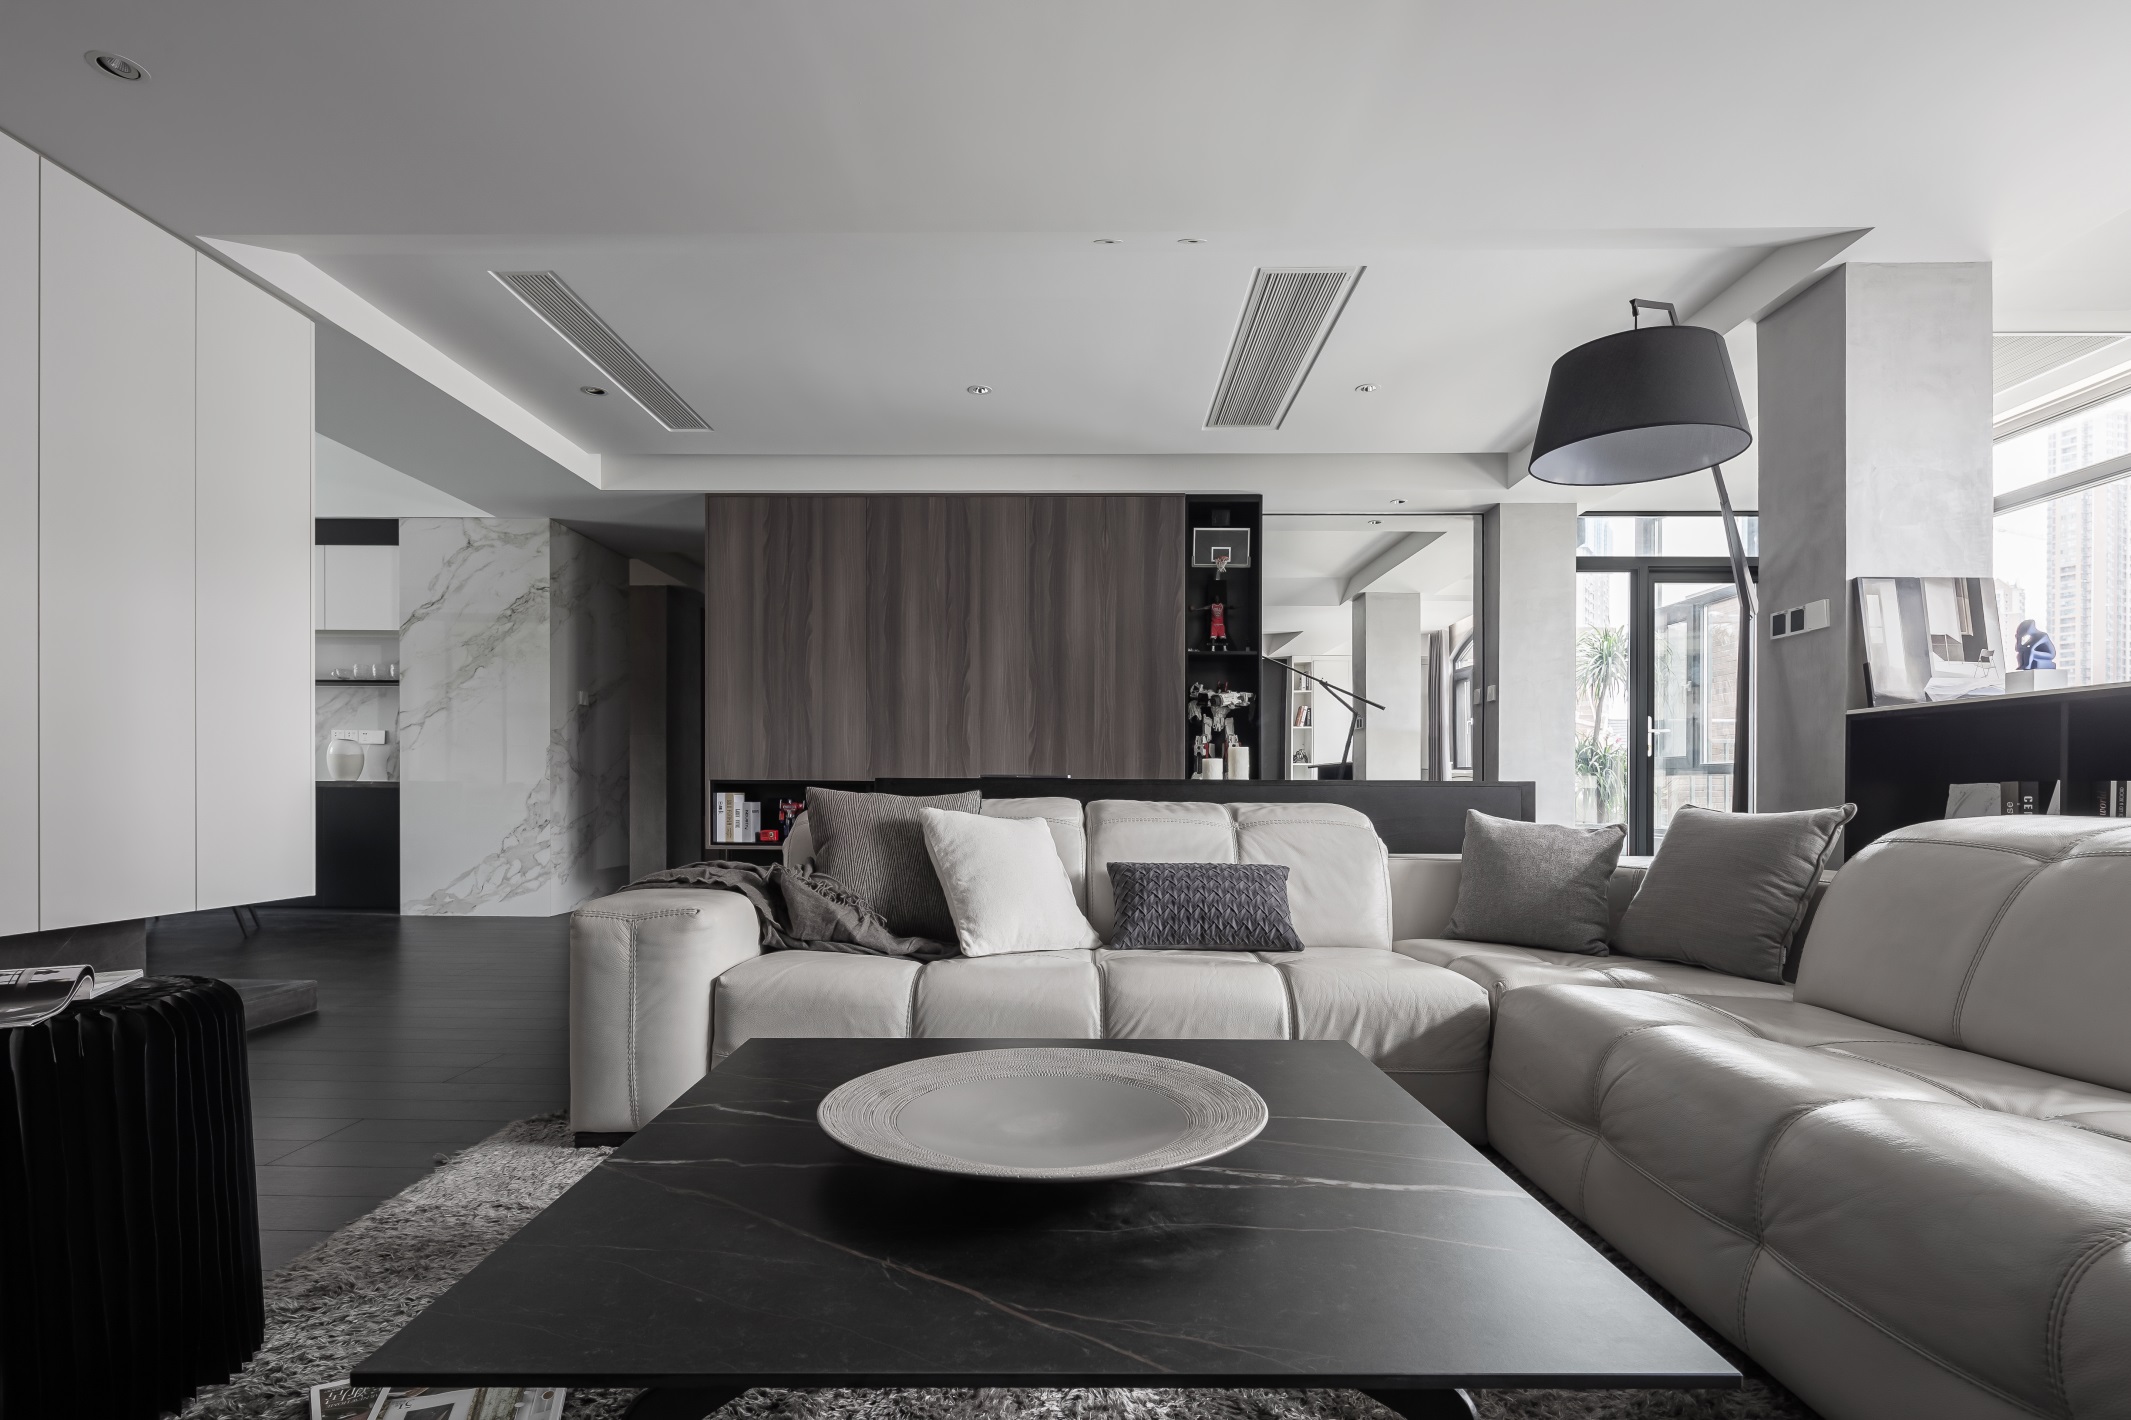 客厅以冷色调为主,结合现代元素软装设计,给空间营造了一种冷峻静谧的